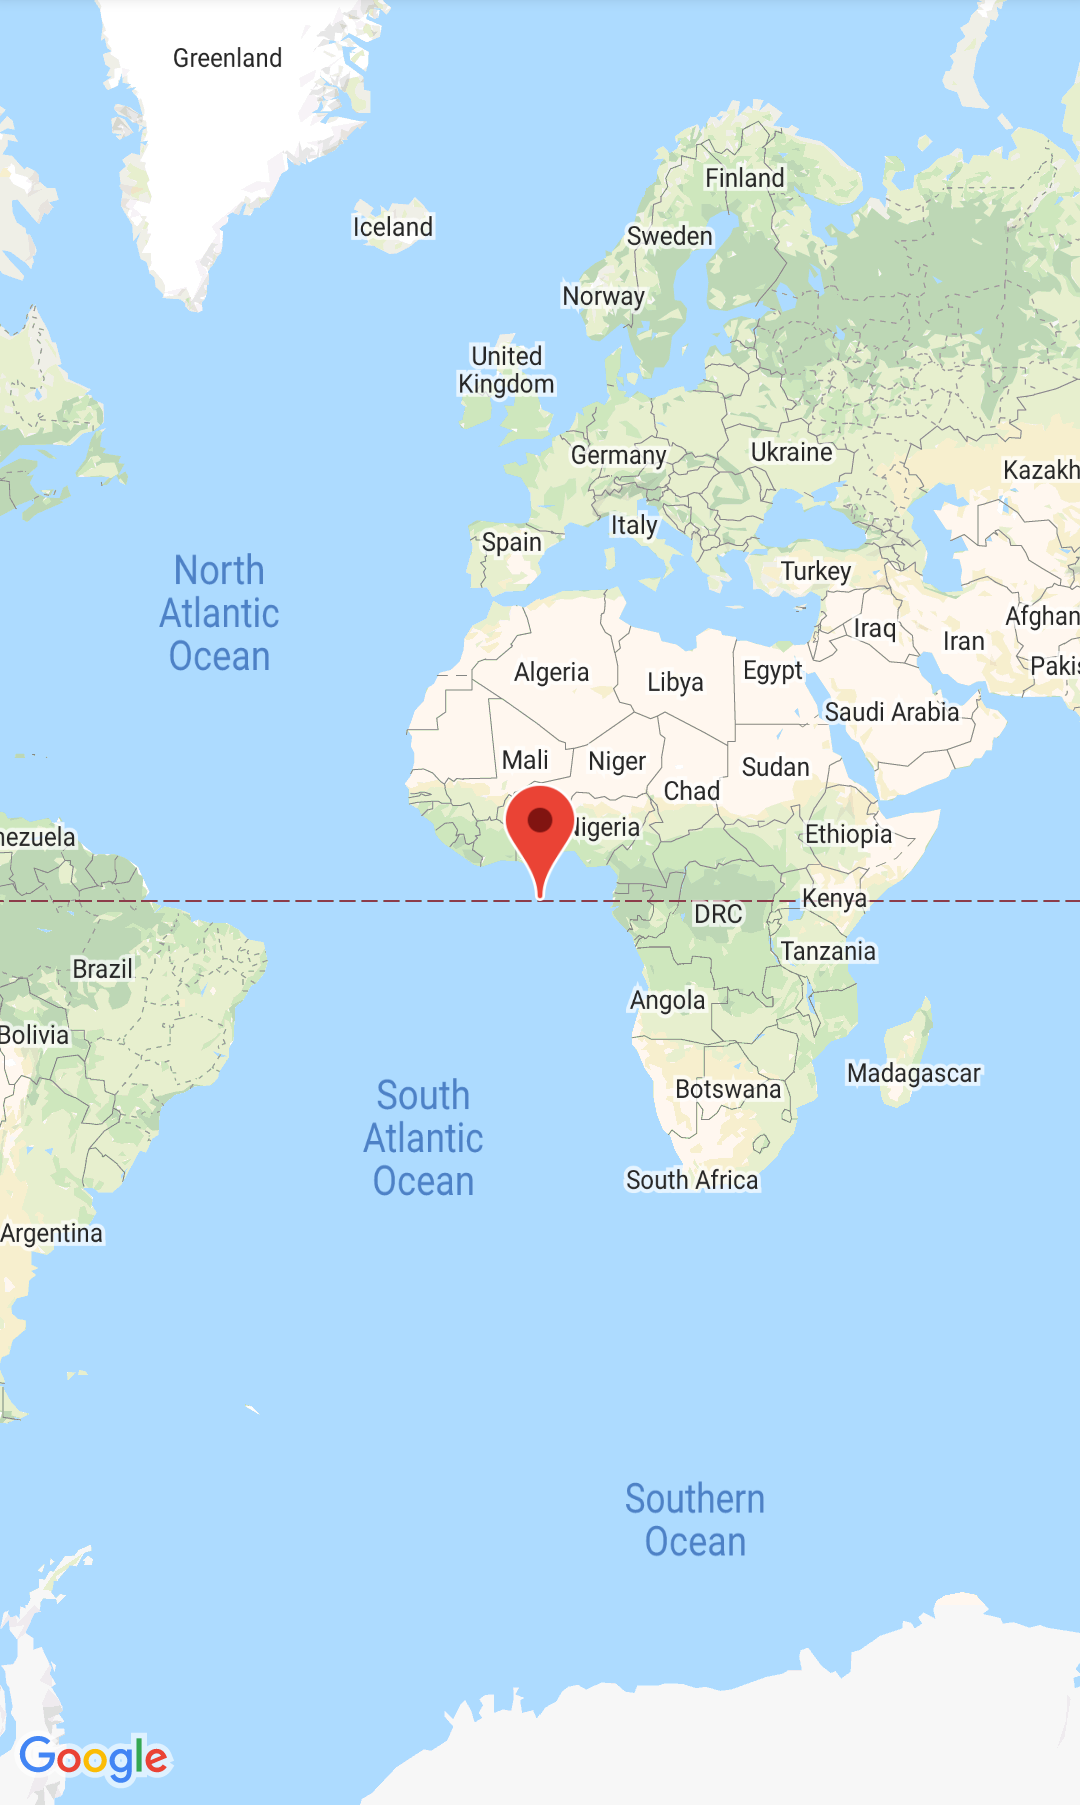 لقطة شاشة تتوسطها الخريطة ومحدّد الخريطة في جزيرة نول.